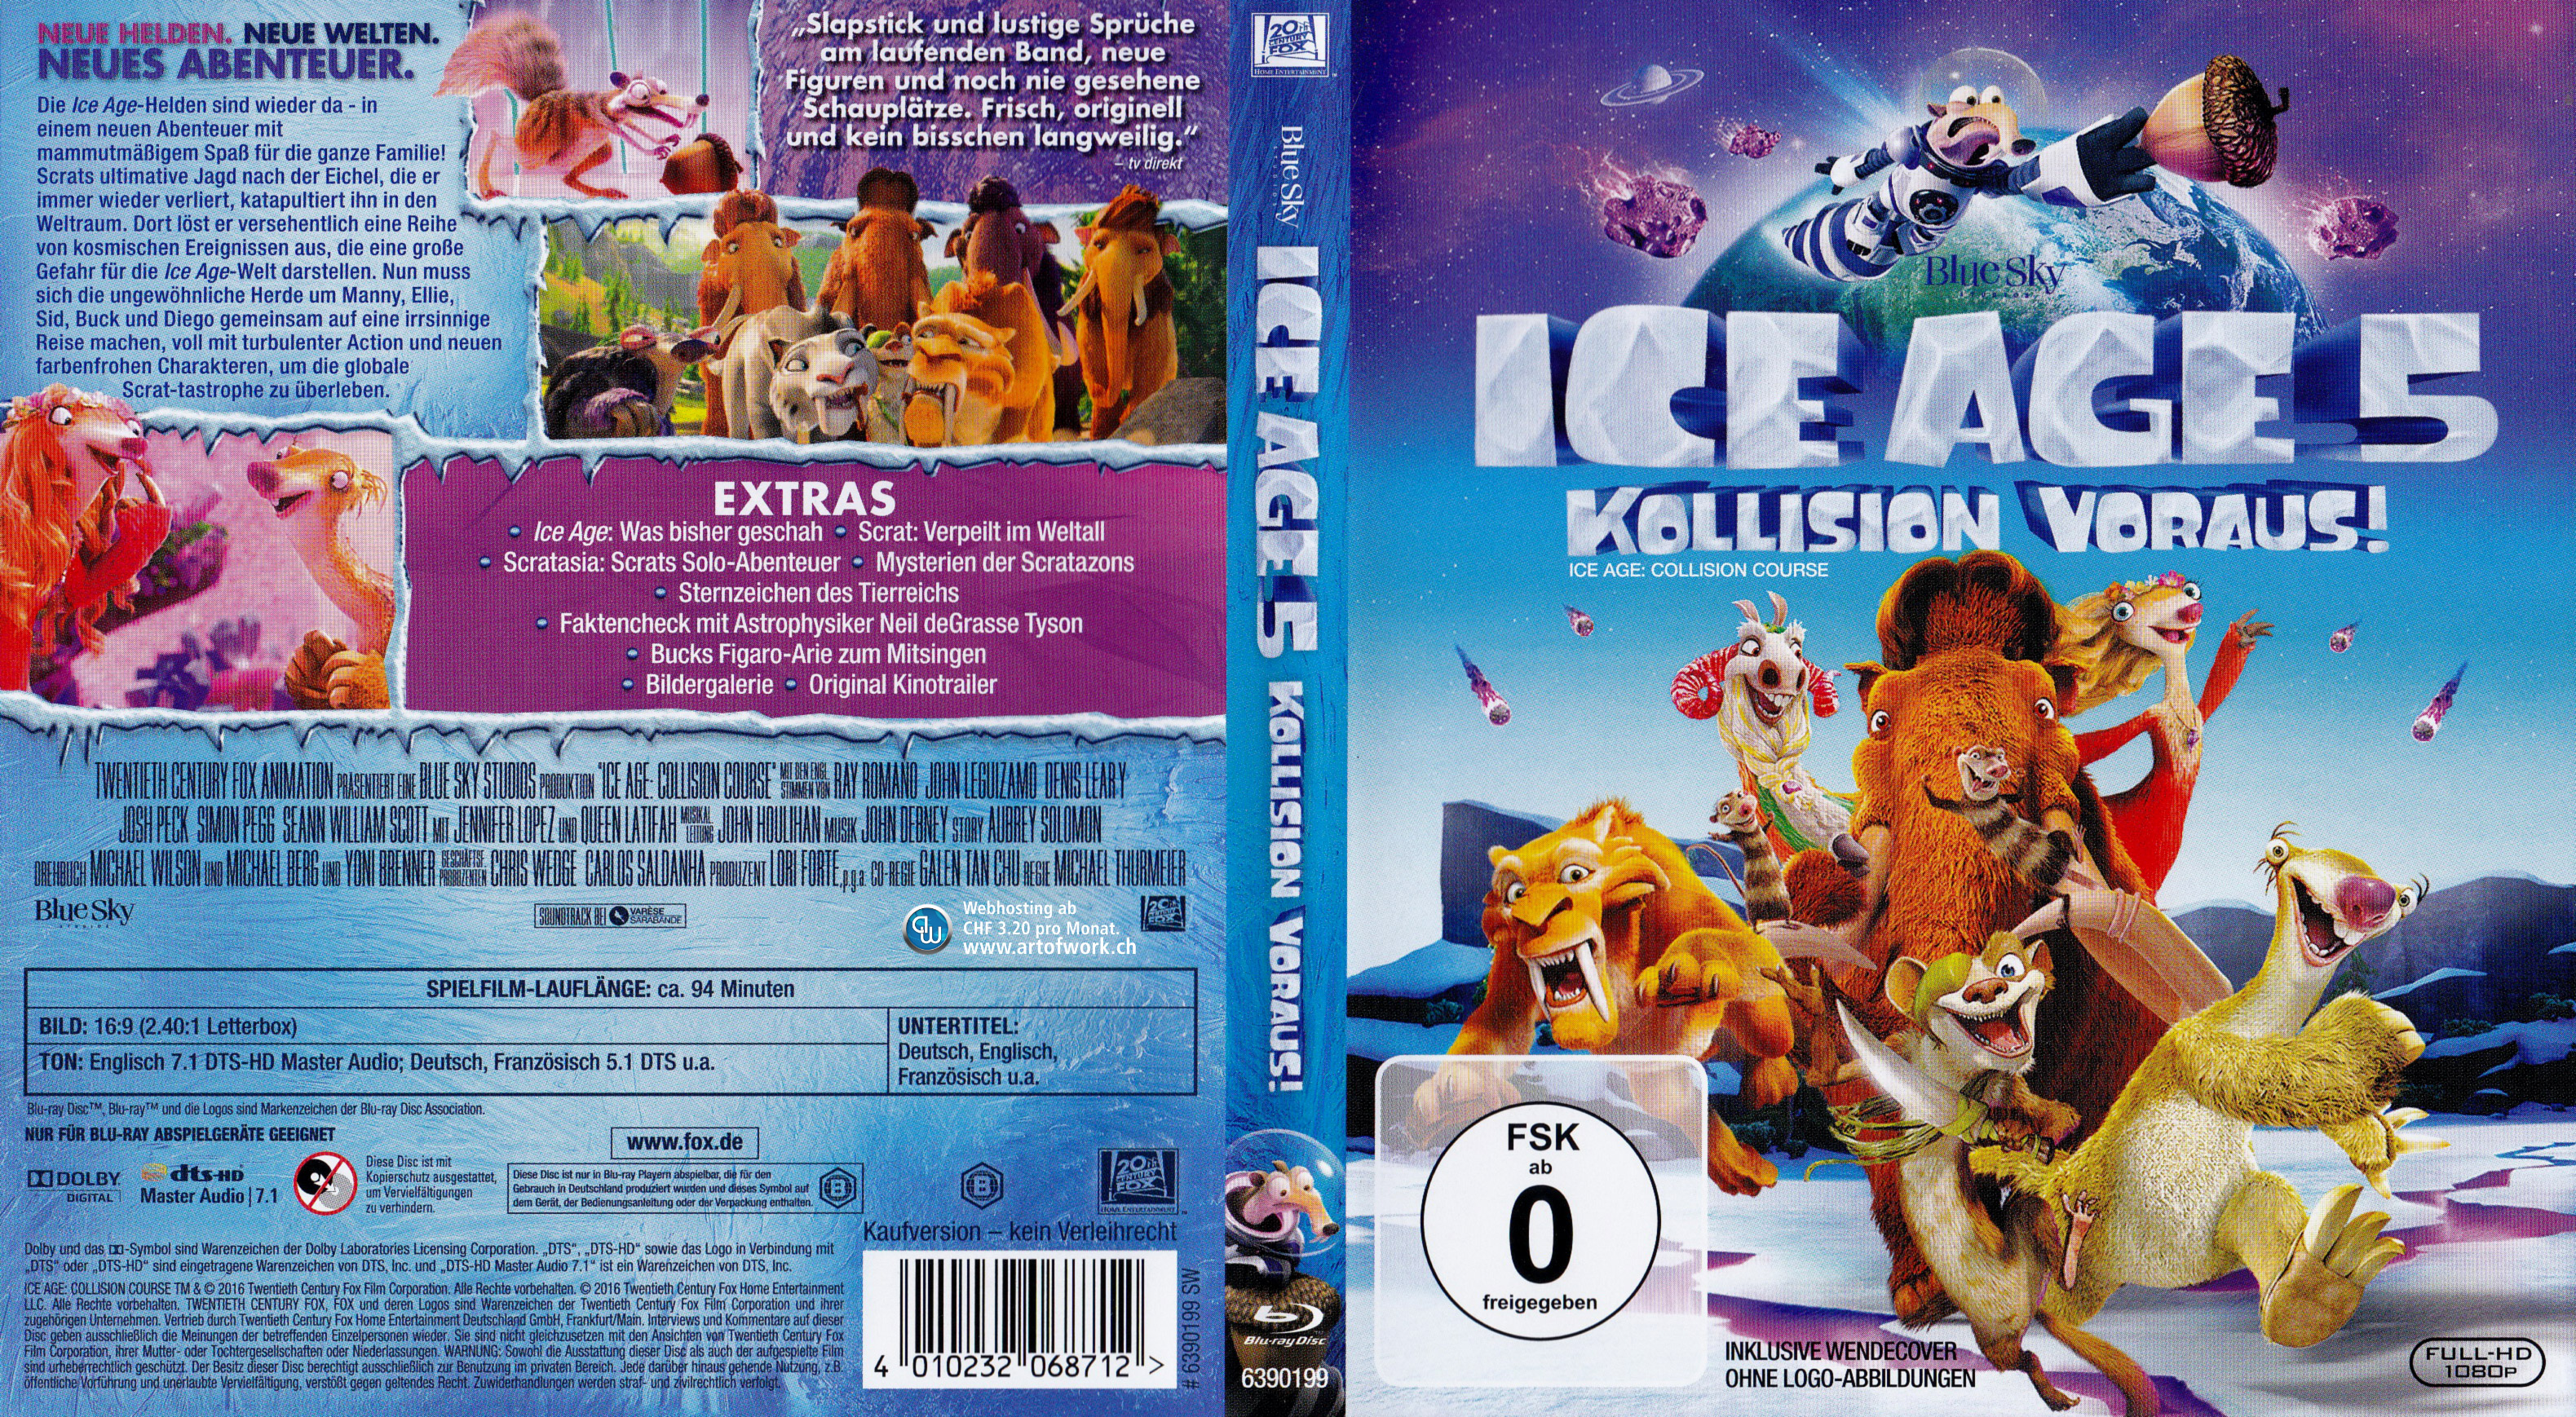 Ice Age 5 Kollision voraus Cover deutsch Blu-ray.